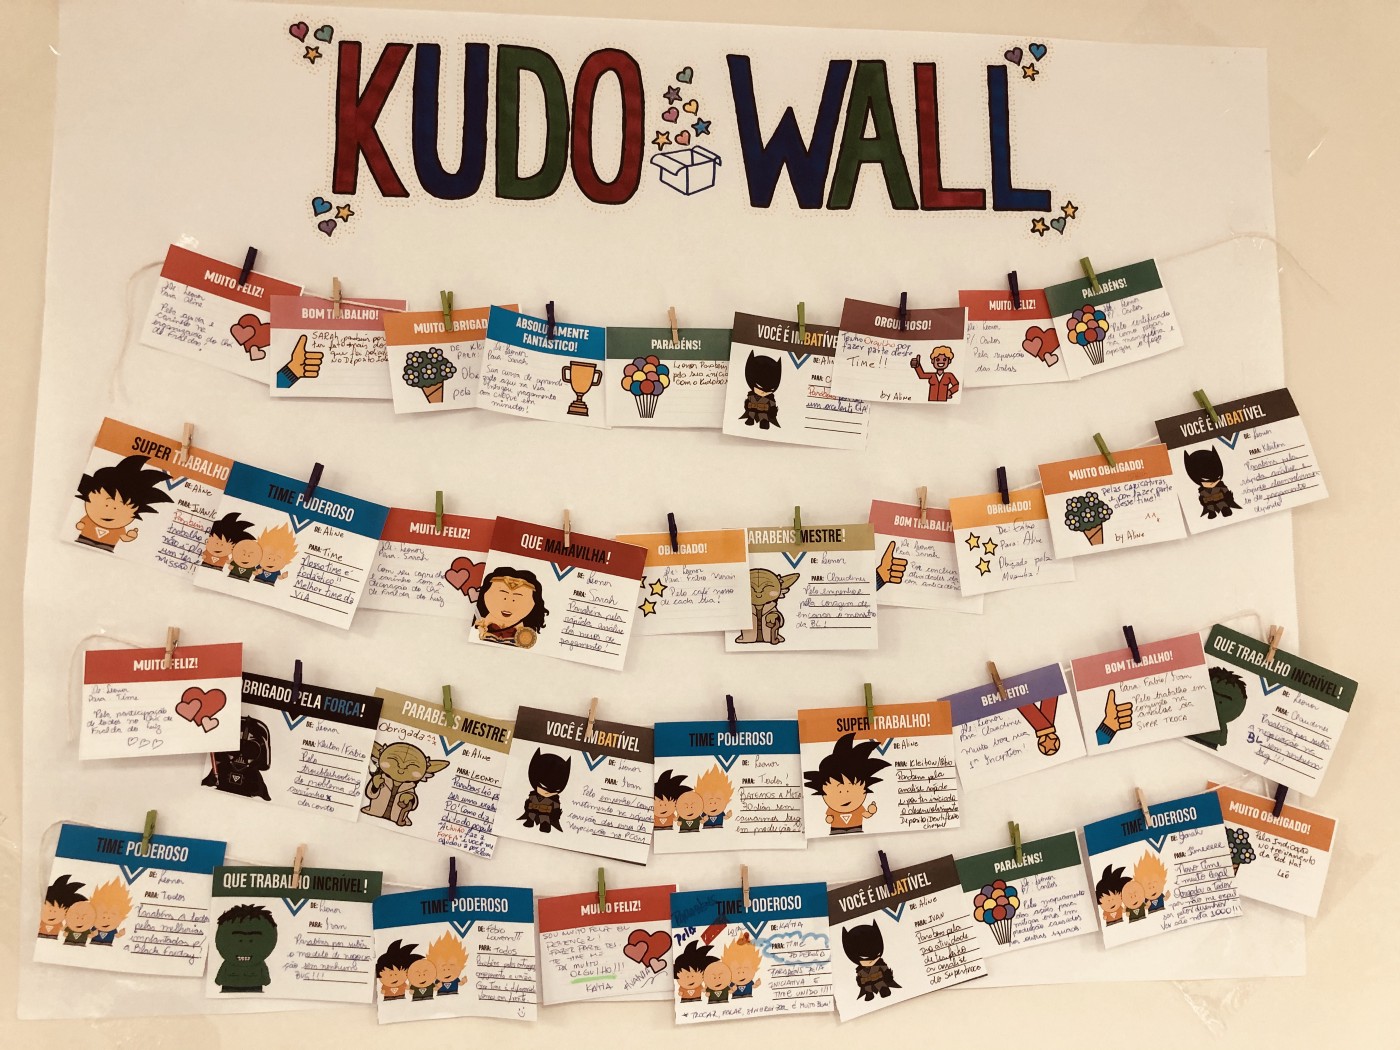 Kudo Wall é uma boa maneira de incentivar e reconhecer os colaboradores.